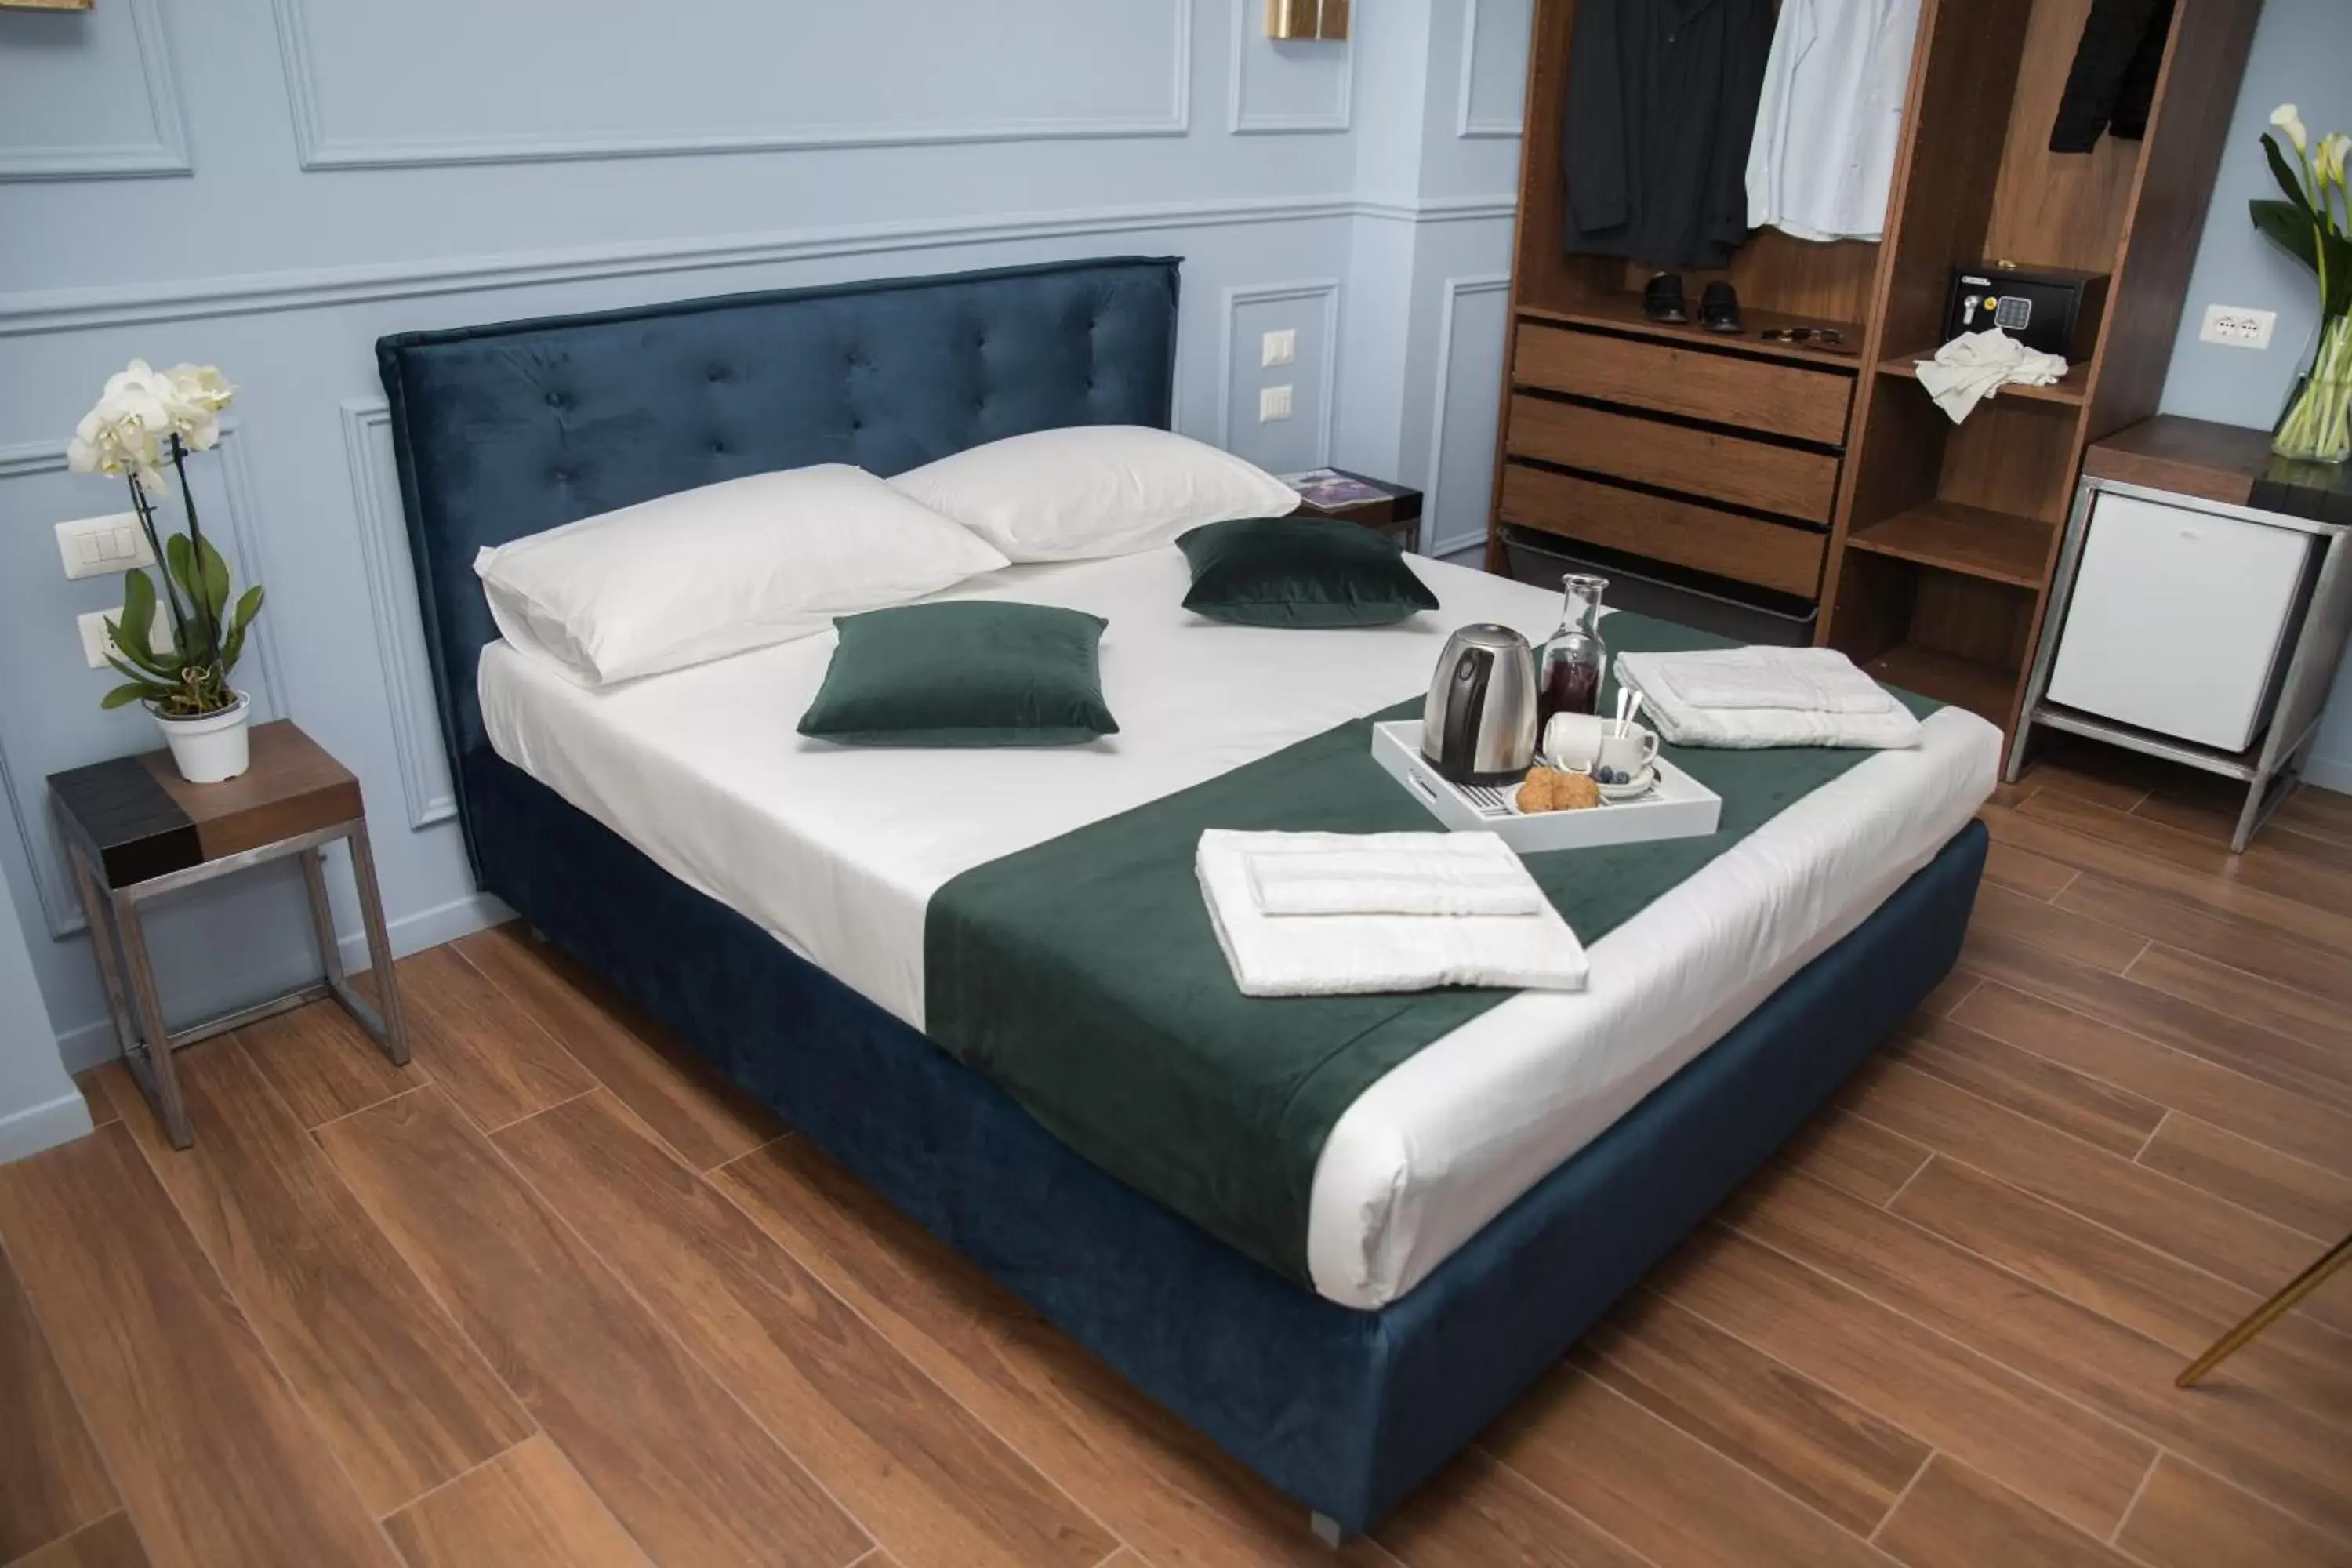 Bed in Unicum Roma Suites